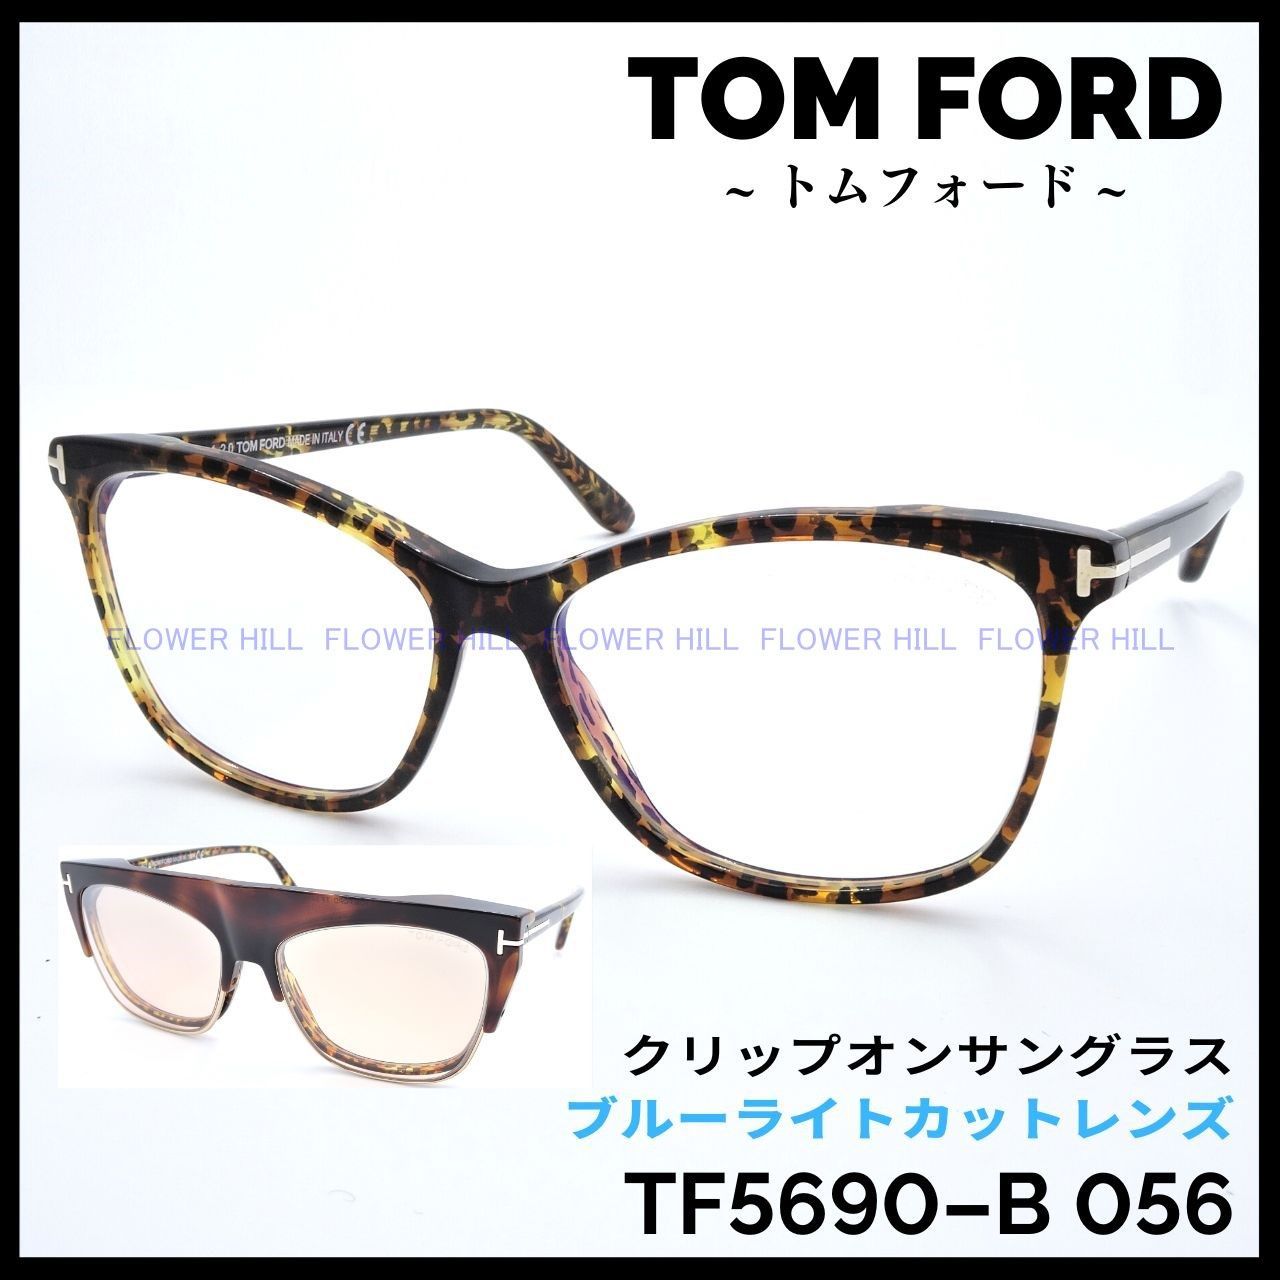 トムフォード TF5690-B 056 クリップオンサングラス 高級メガネ55mmレンズ縦